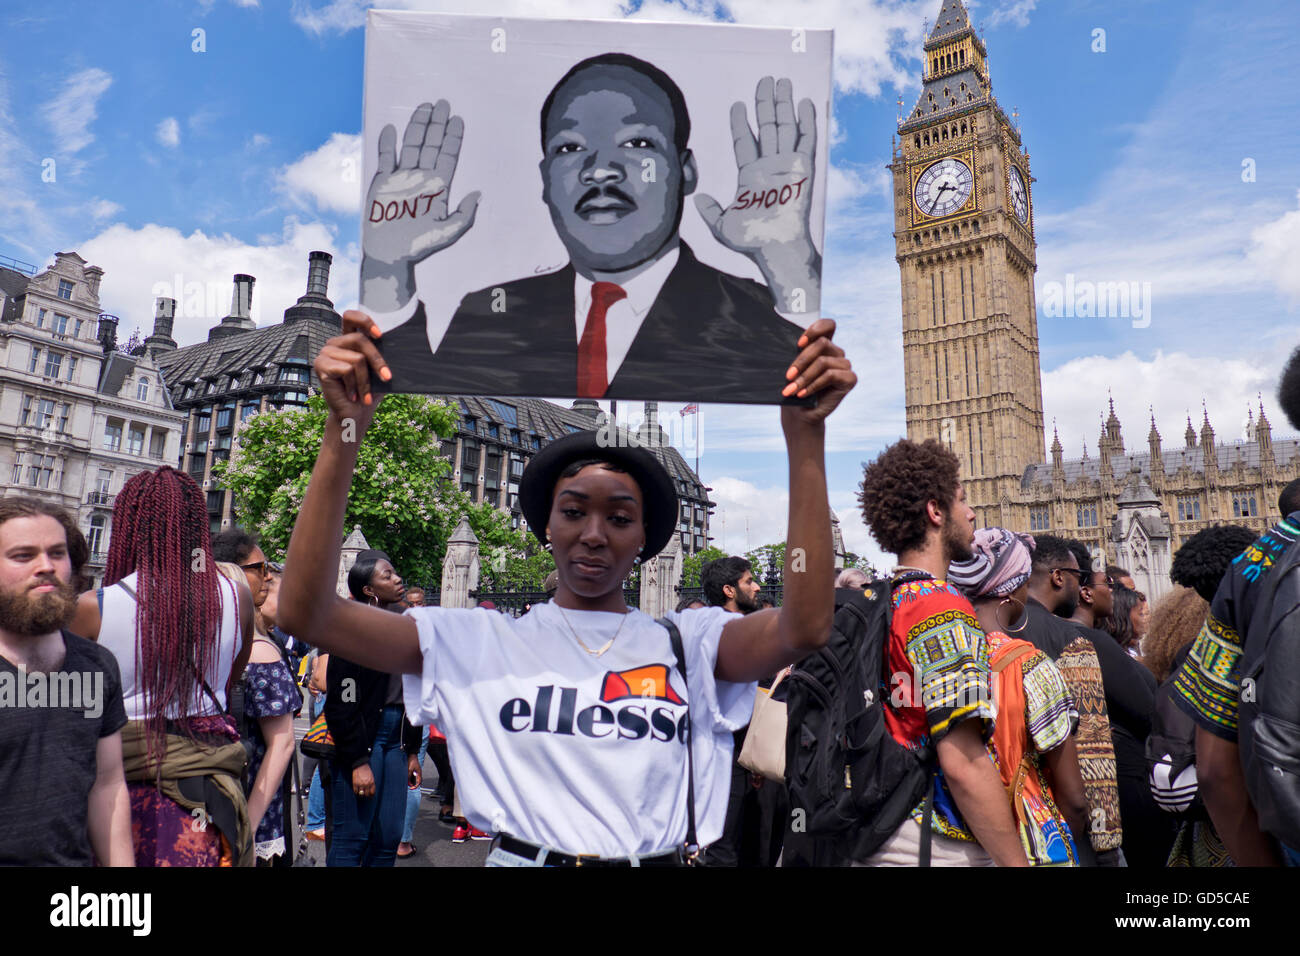 "Nero vive la materia" oltre un migliaio di persone hanno marciato attraverso Londra cantando "Hands Up non sparare". La comunità nera si è indignato da noi polizia brutalità dopo l uccisione dei due uomini neri - uno in Minnesota e uno in Louisiana. Foto Stock